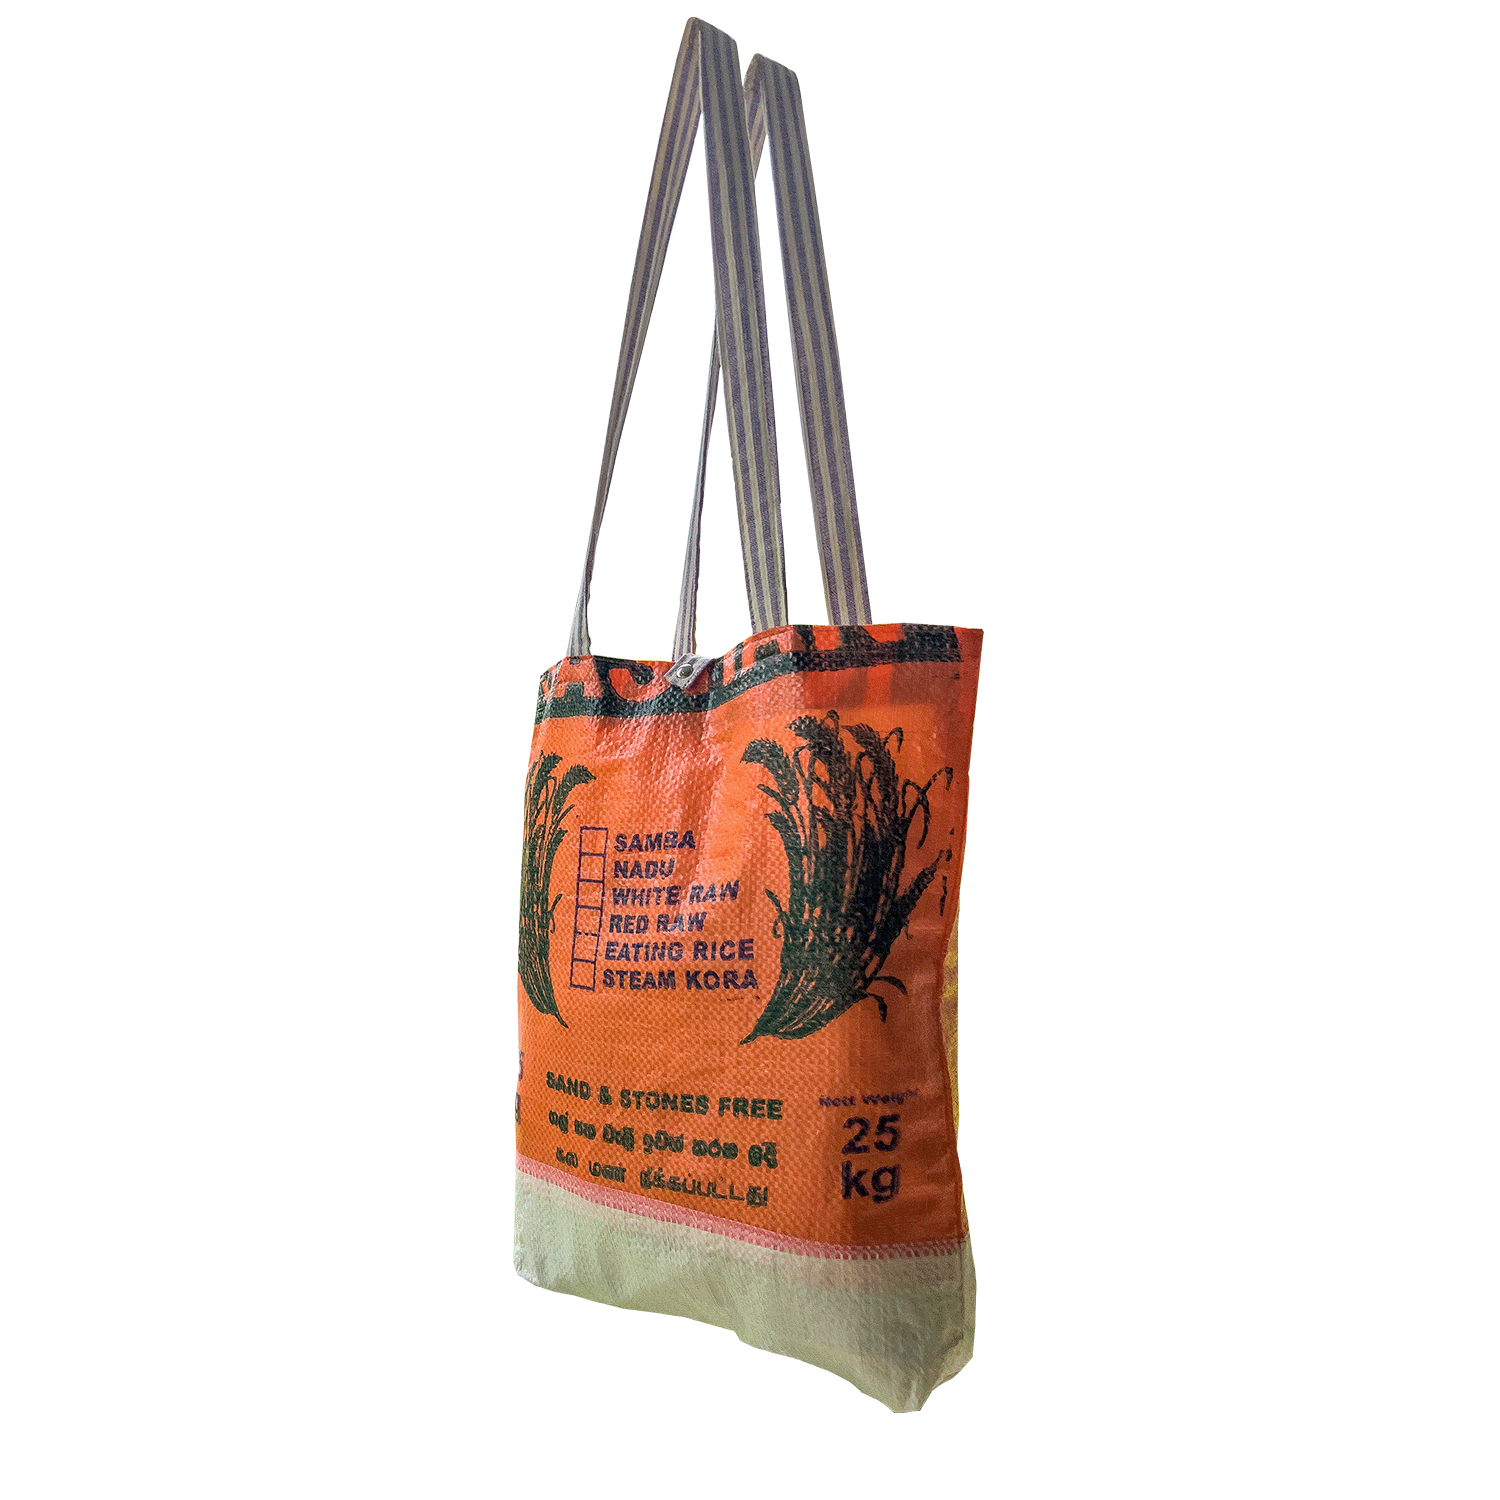 Recycled plastic bag - tote bag - market bag - handmade upcycled bag -  green bag